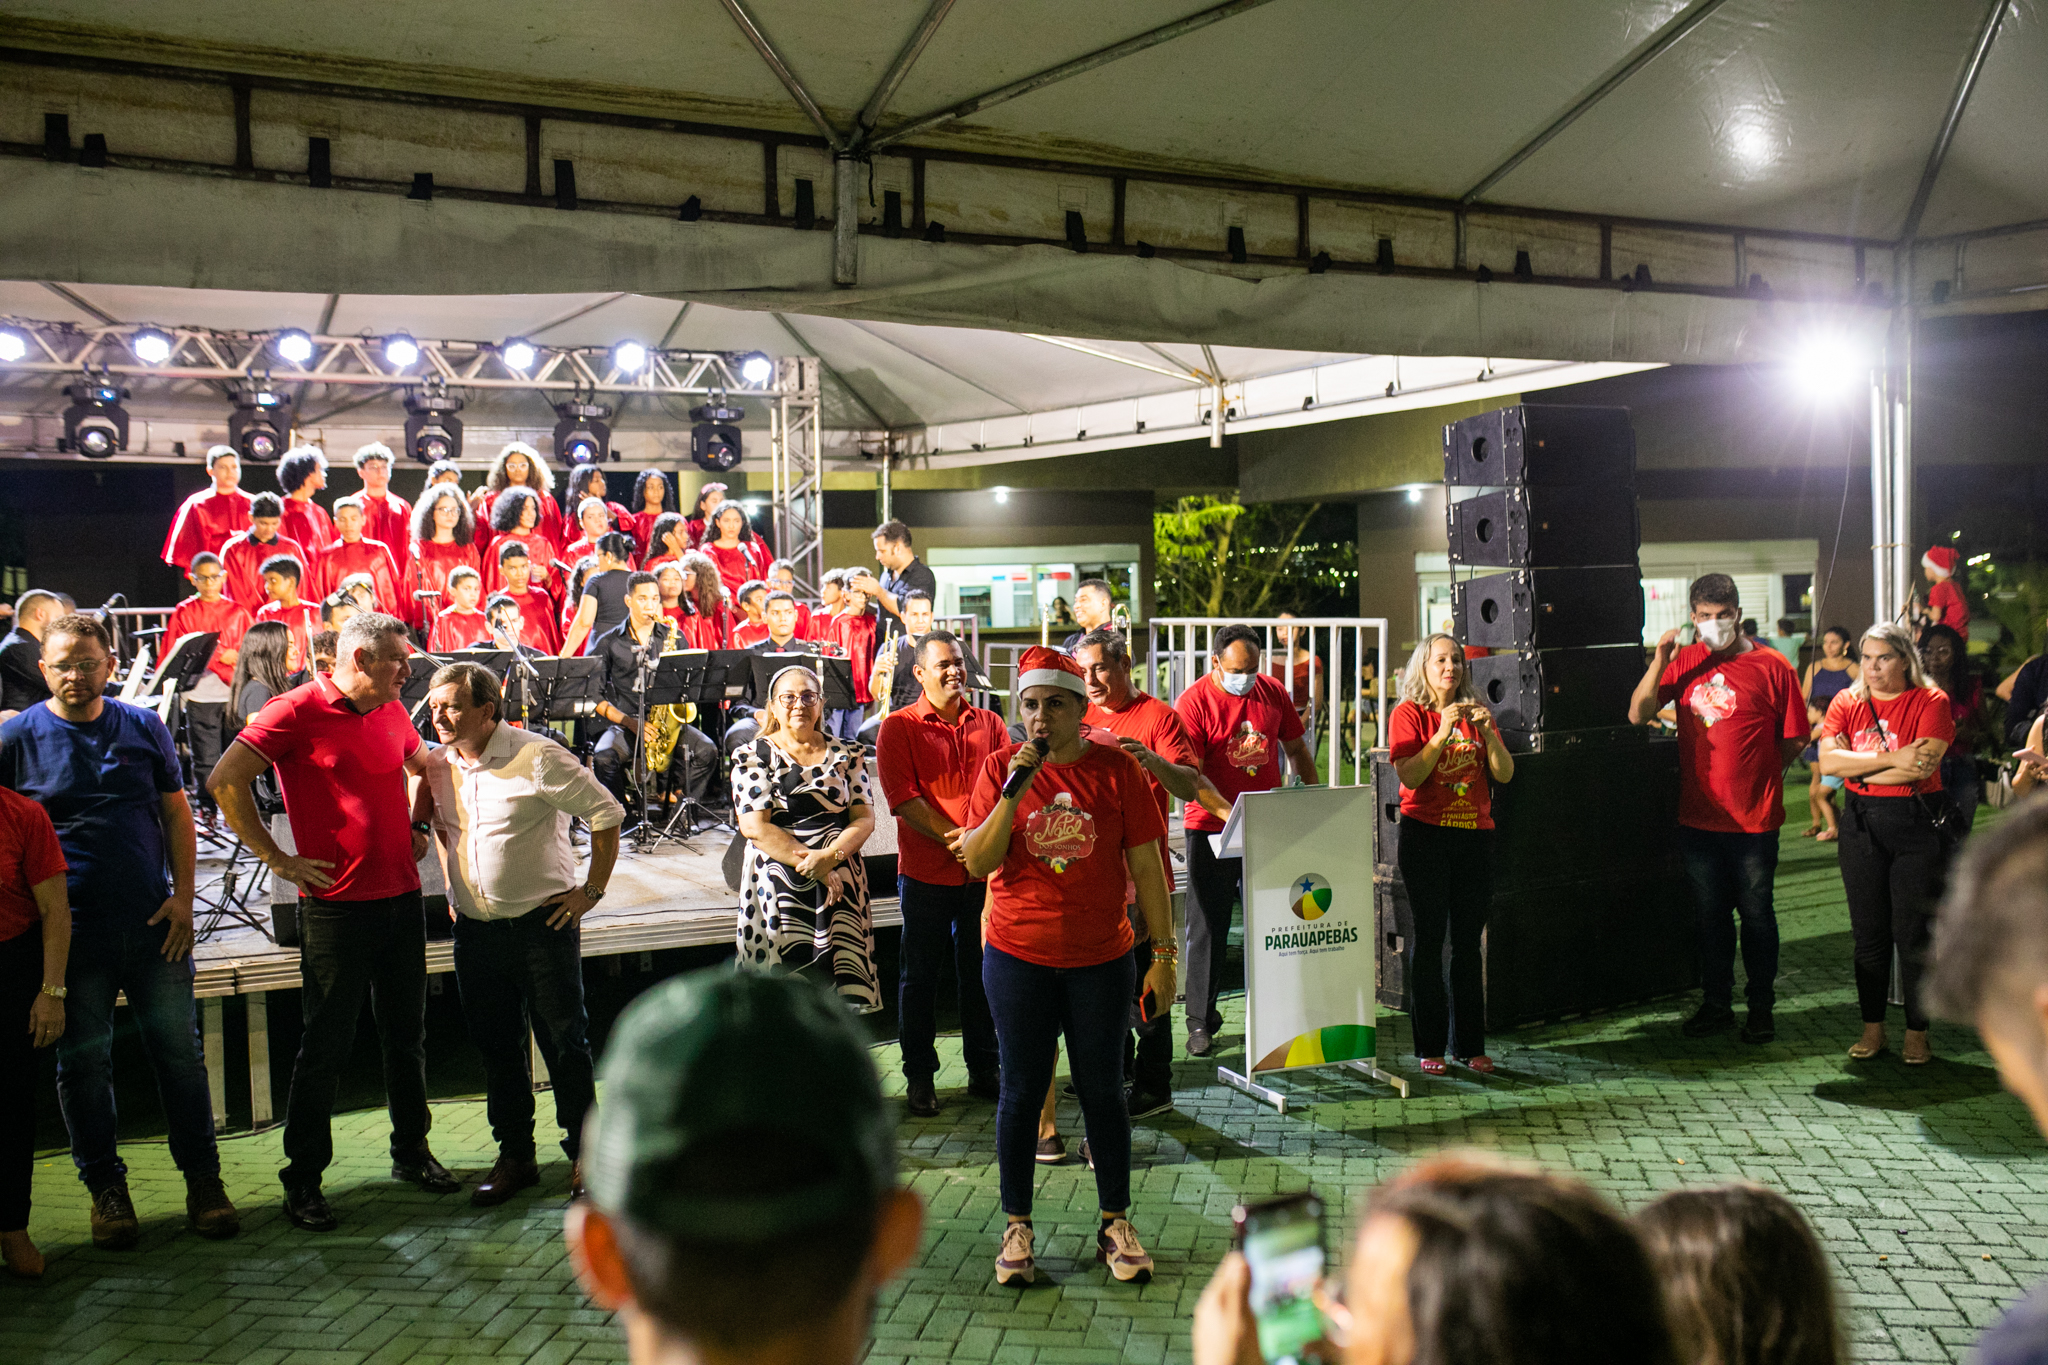 Cantata de Natal marca a inauguração da iluminação natalina da Câmara  Municipal de Parauapebas - Portal Pebinha de Açúcar - 16 anos